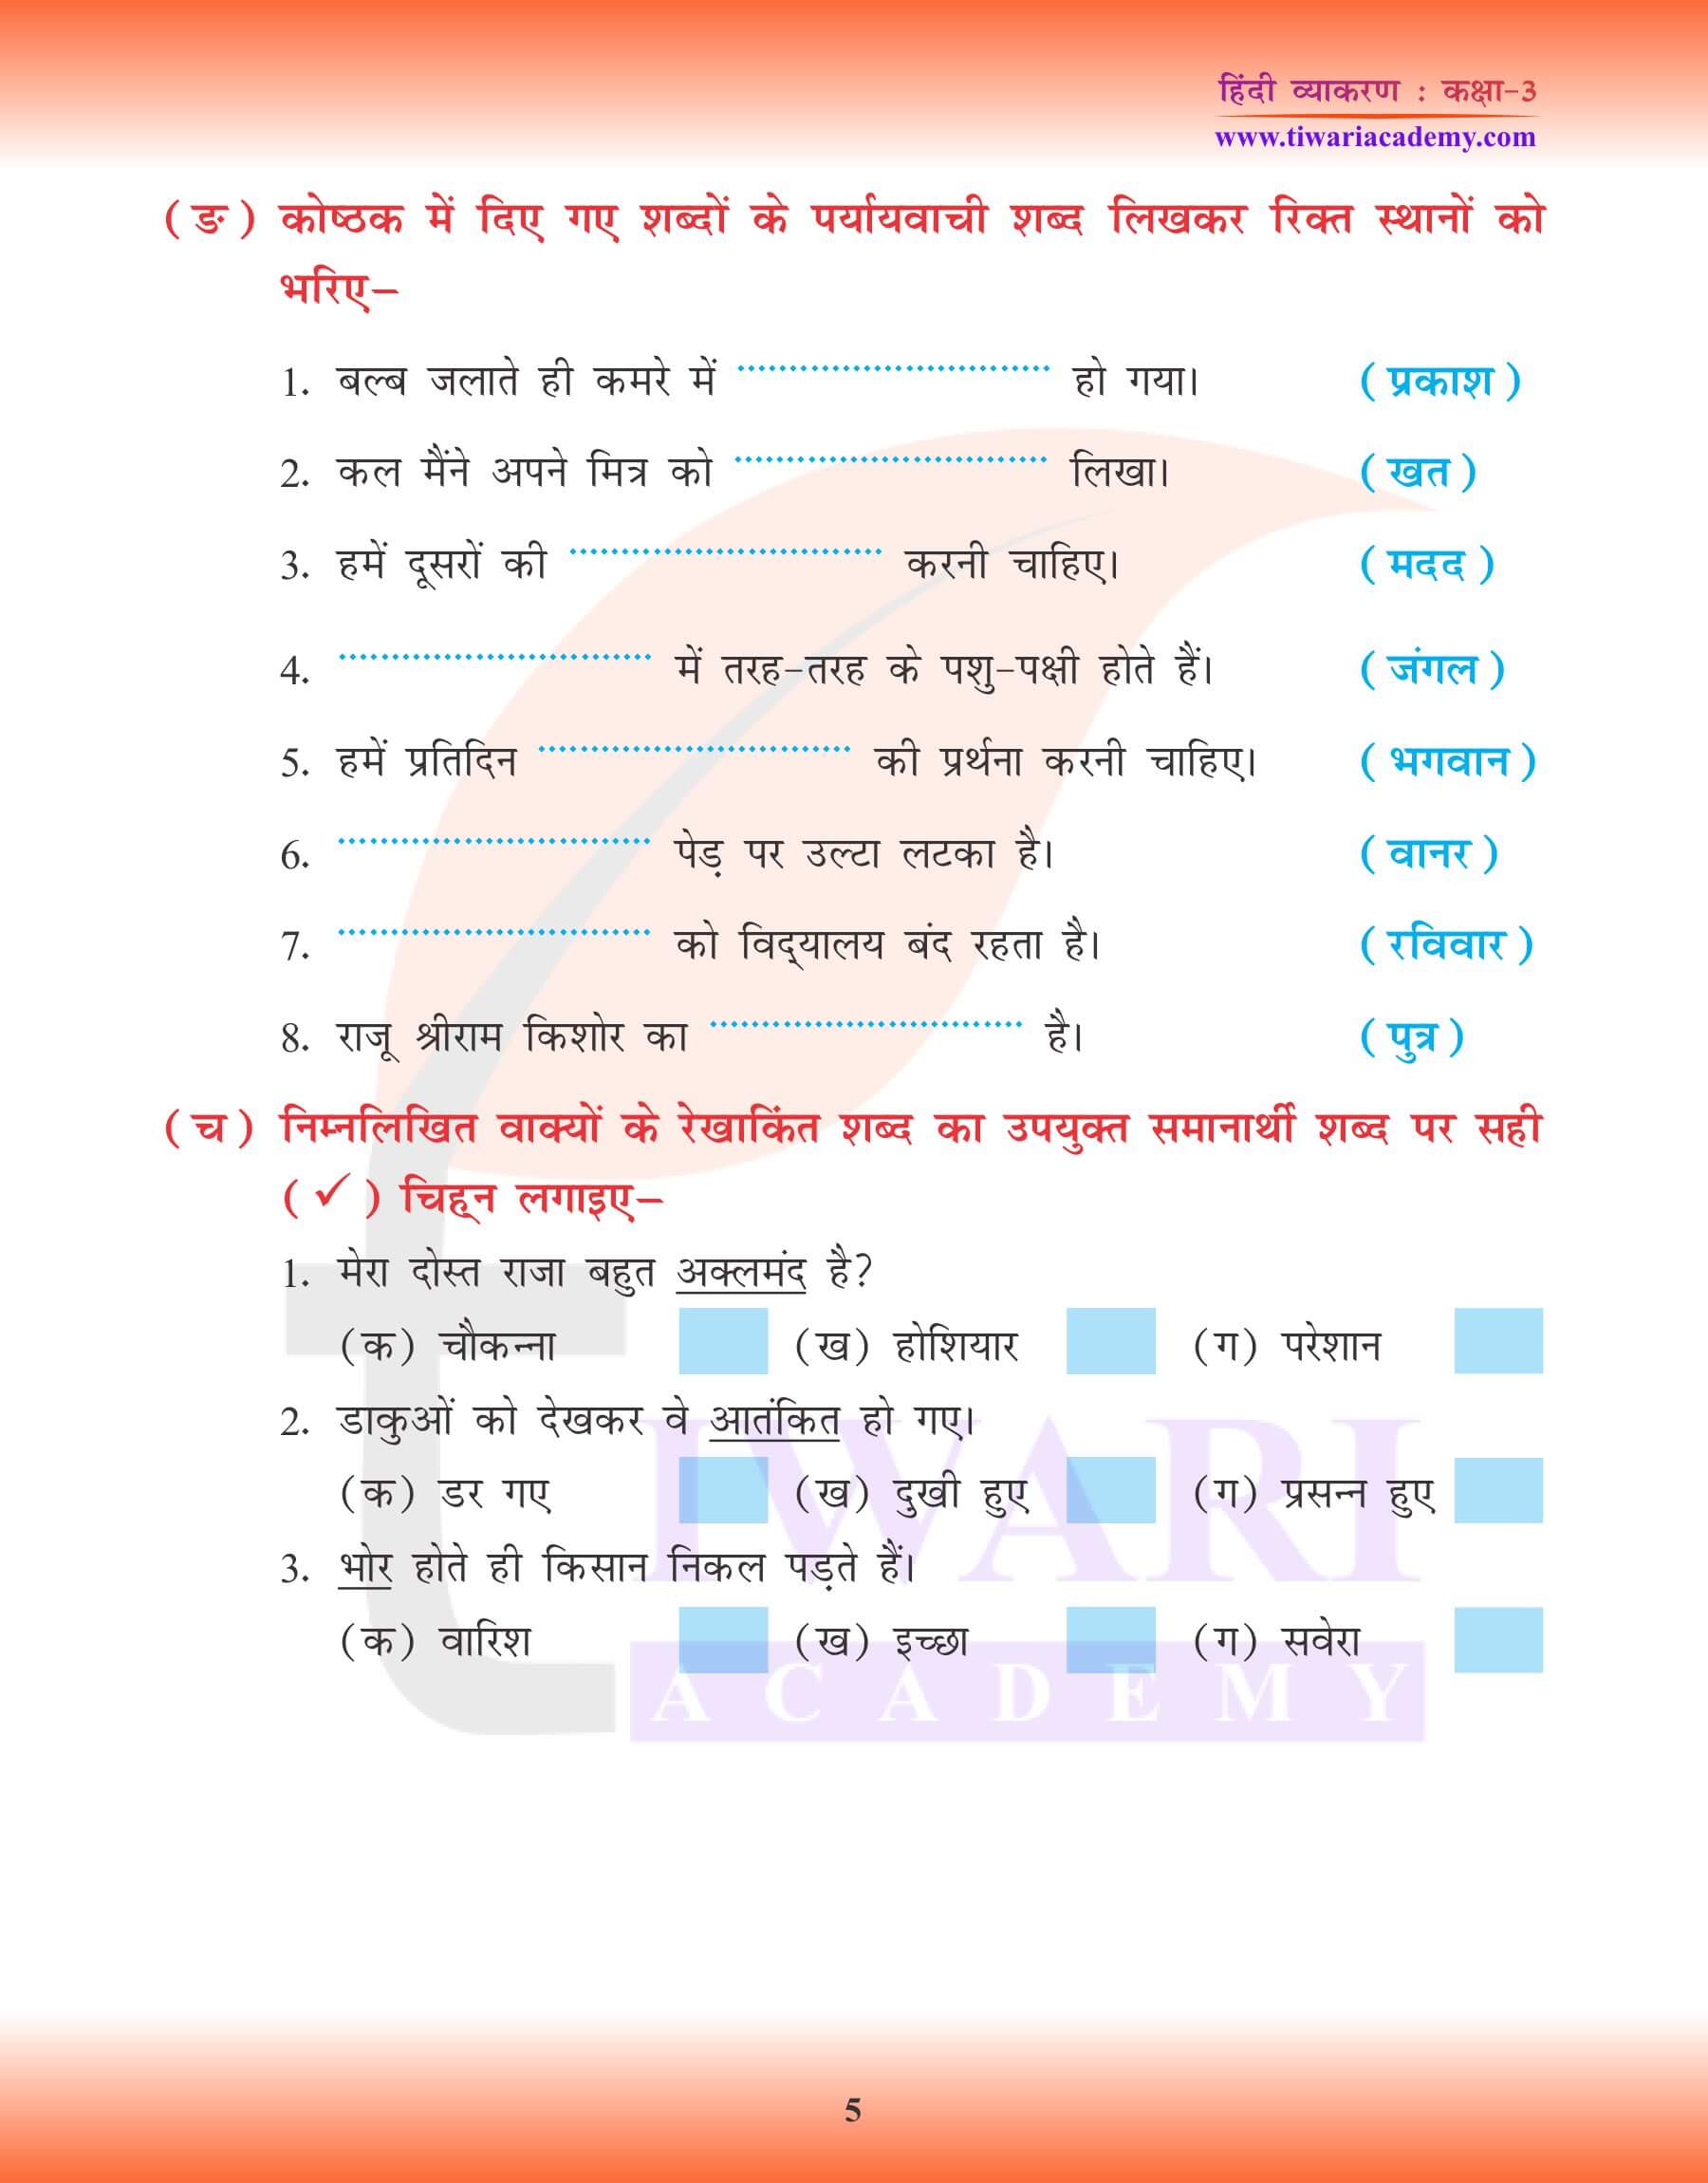 कक्षा 3 हिंदी व्याकरण में पर्यायवाची शब्द